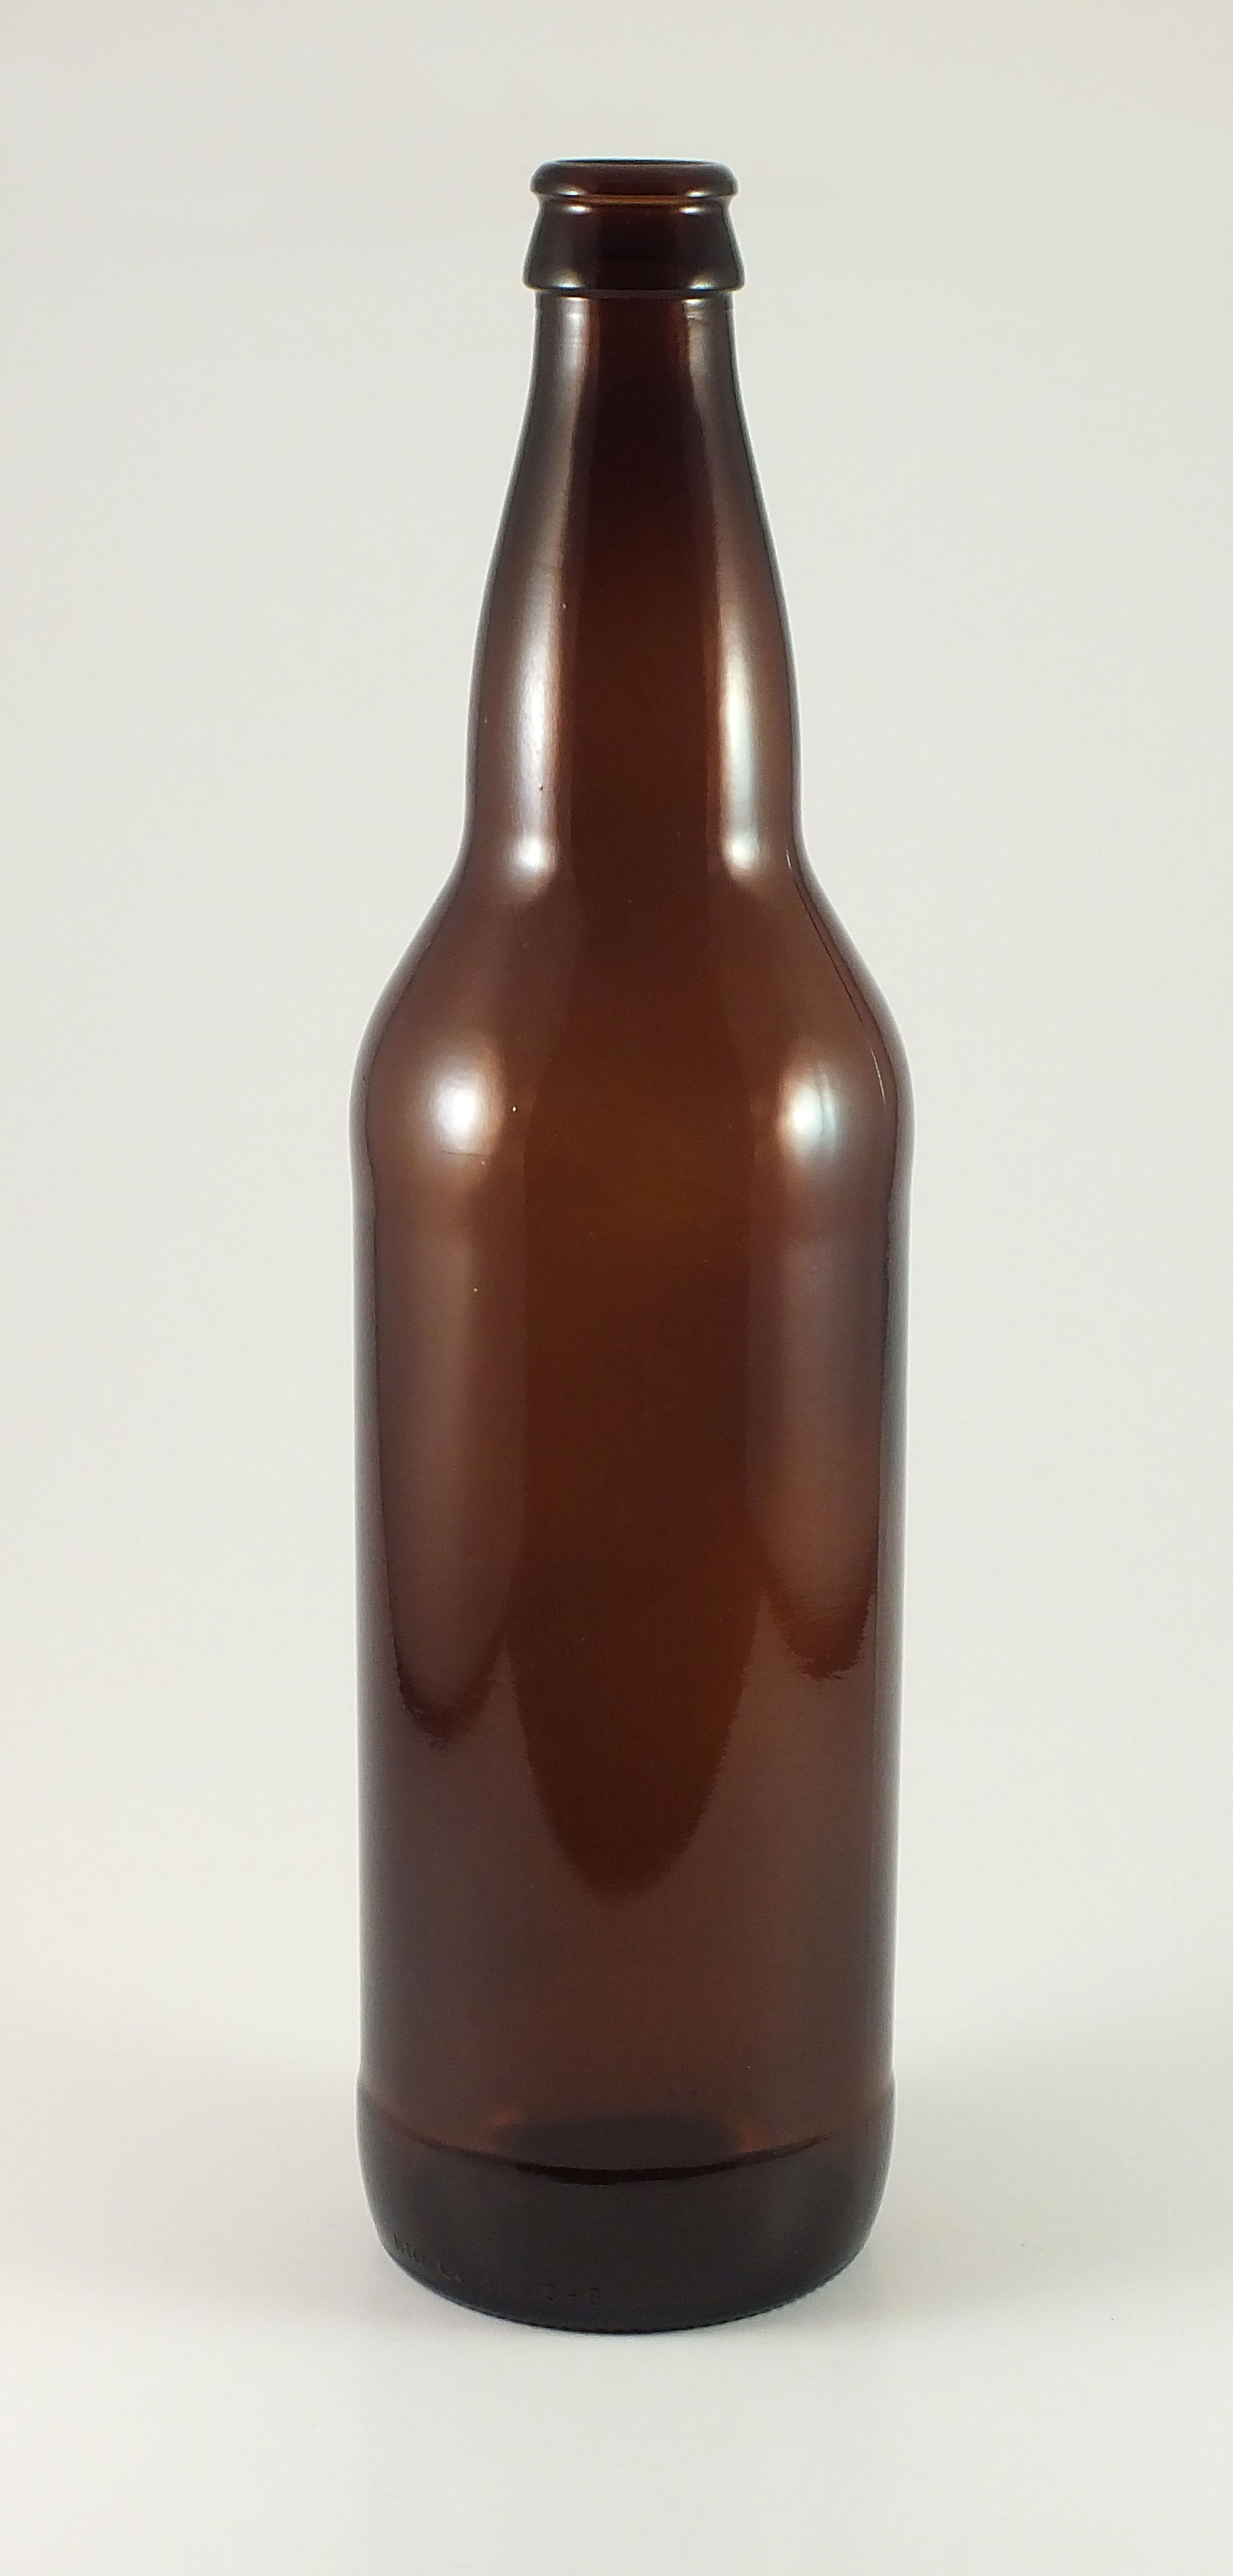 22 oz beer bottle - Amber/Brown Glass 22 oz Beer bottle Sold By ...